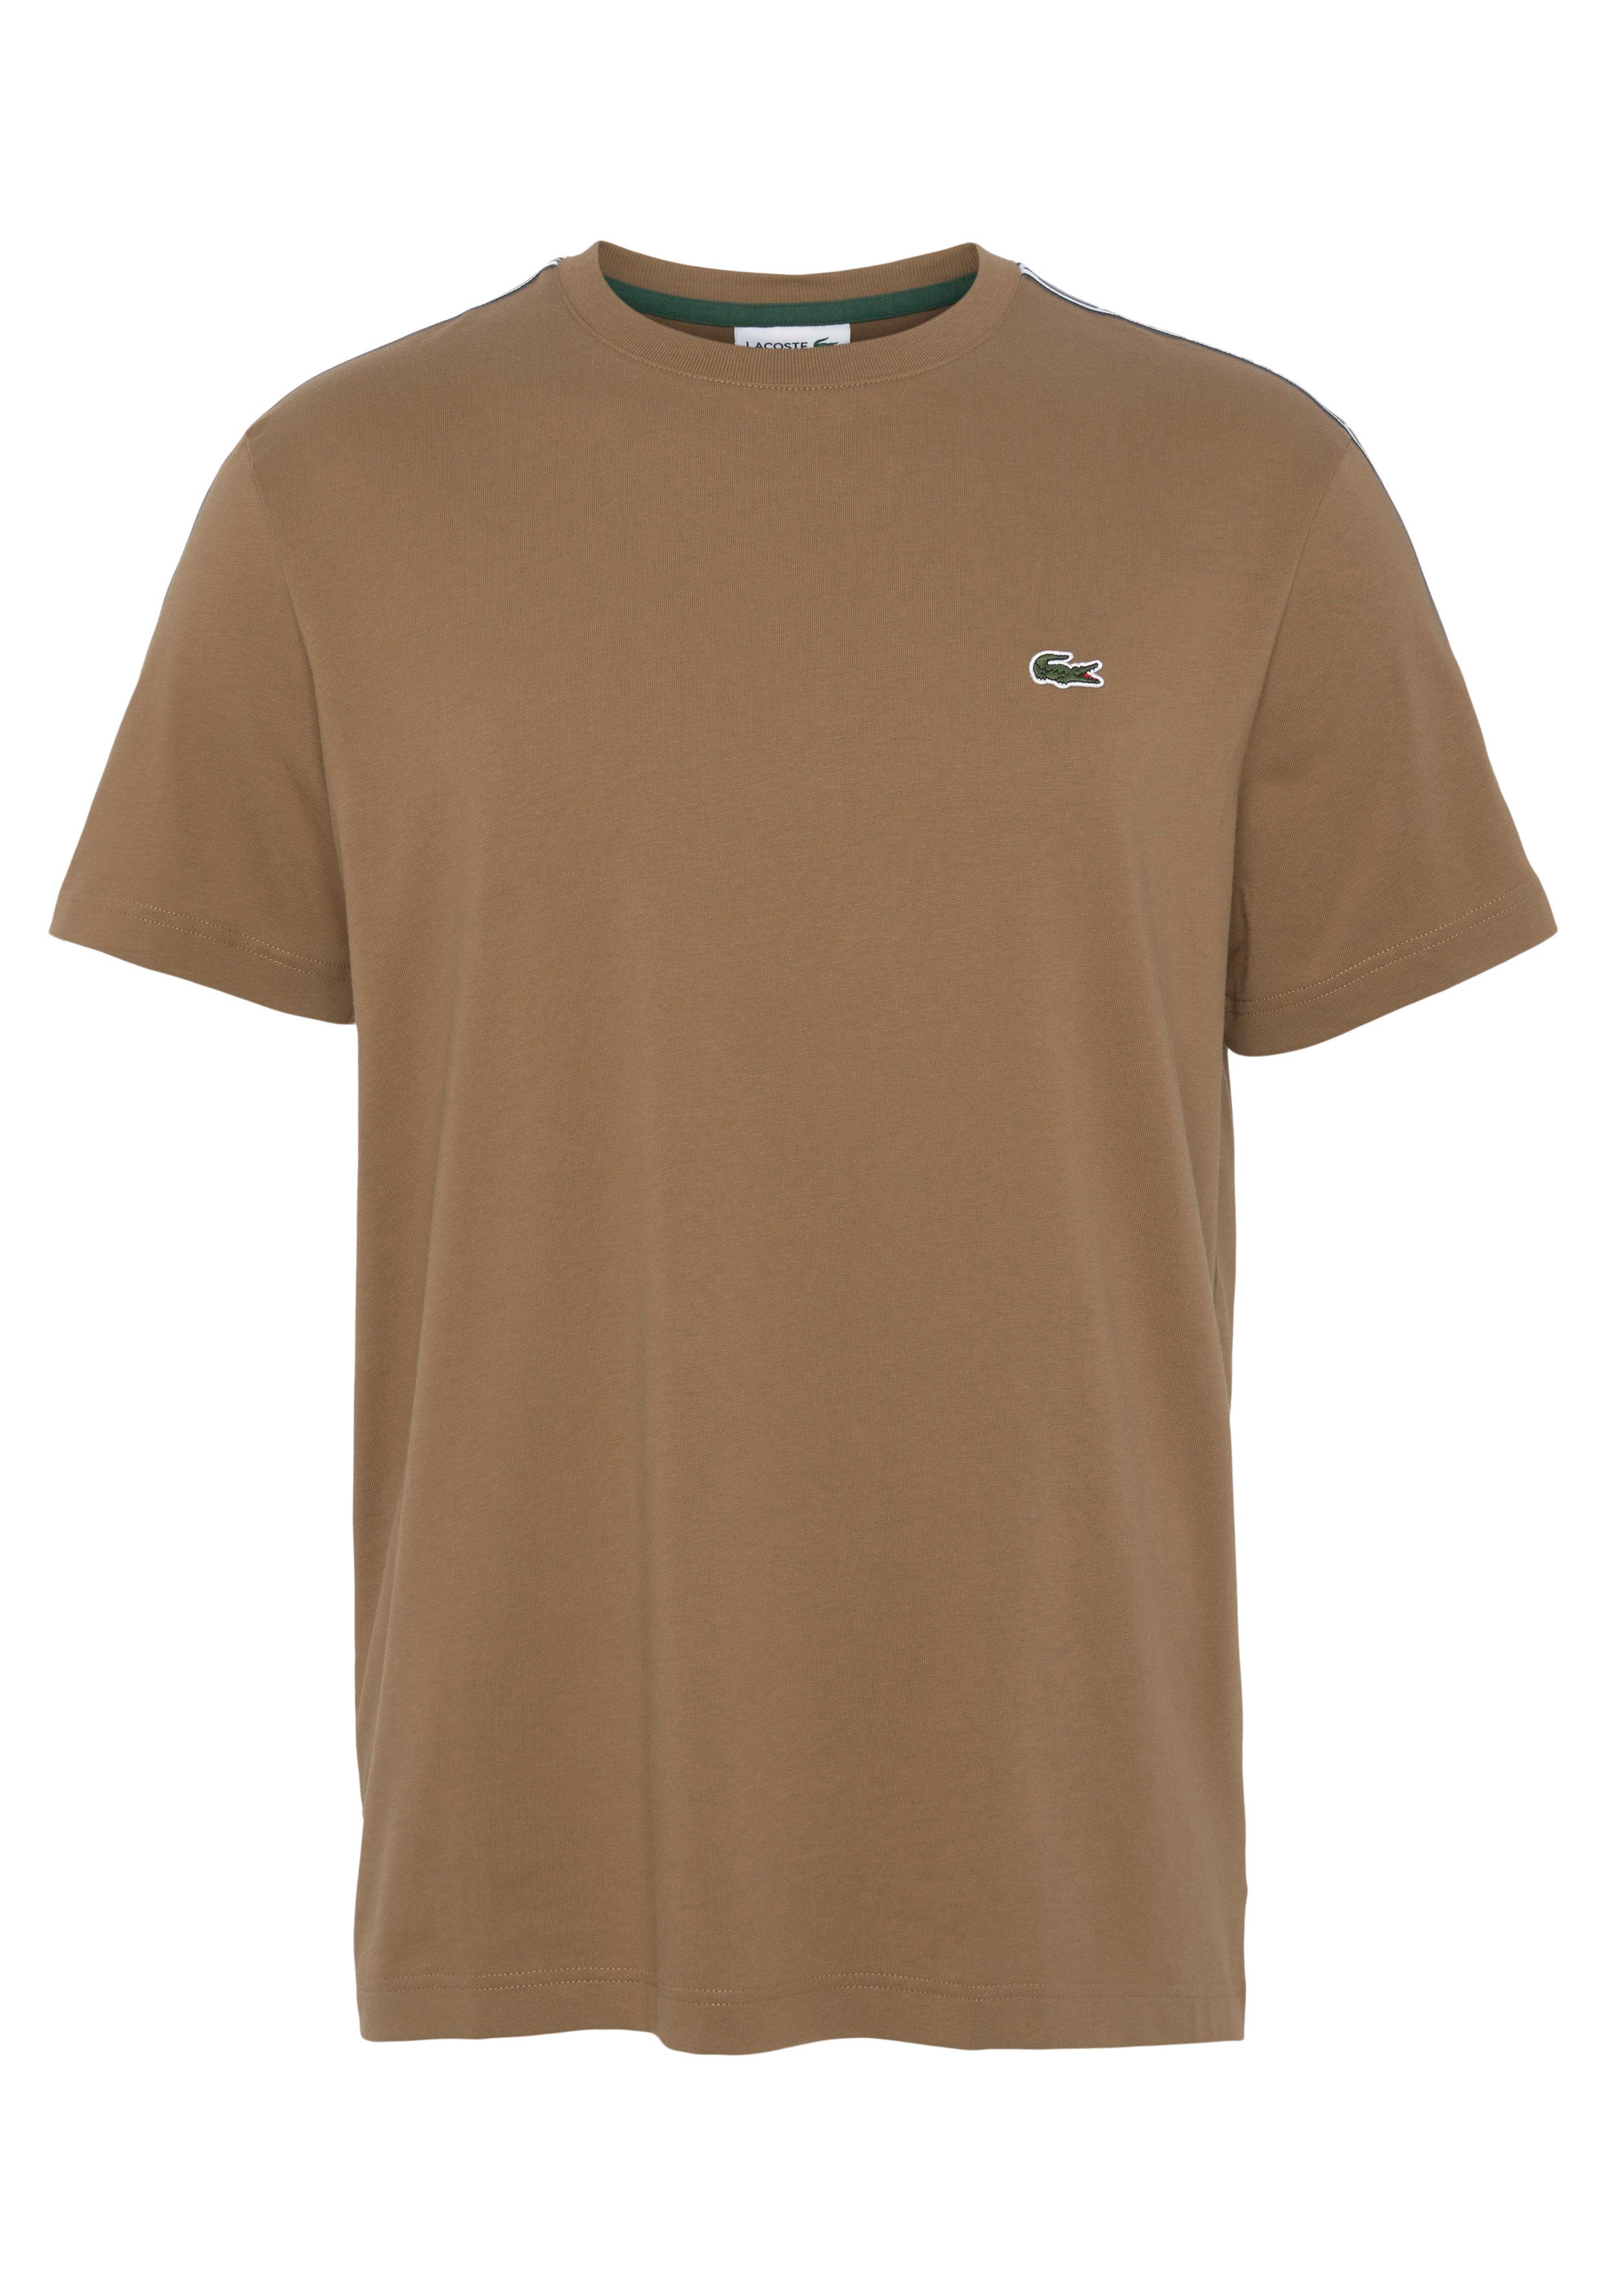 Lacoste T-Shirt mit Schultern braun an beschriftetem den Kontrastband